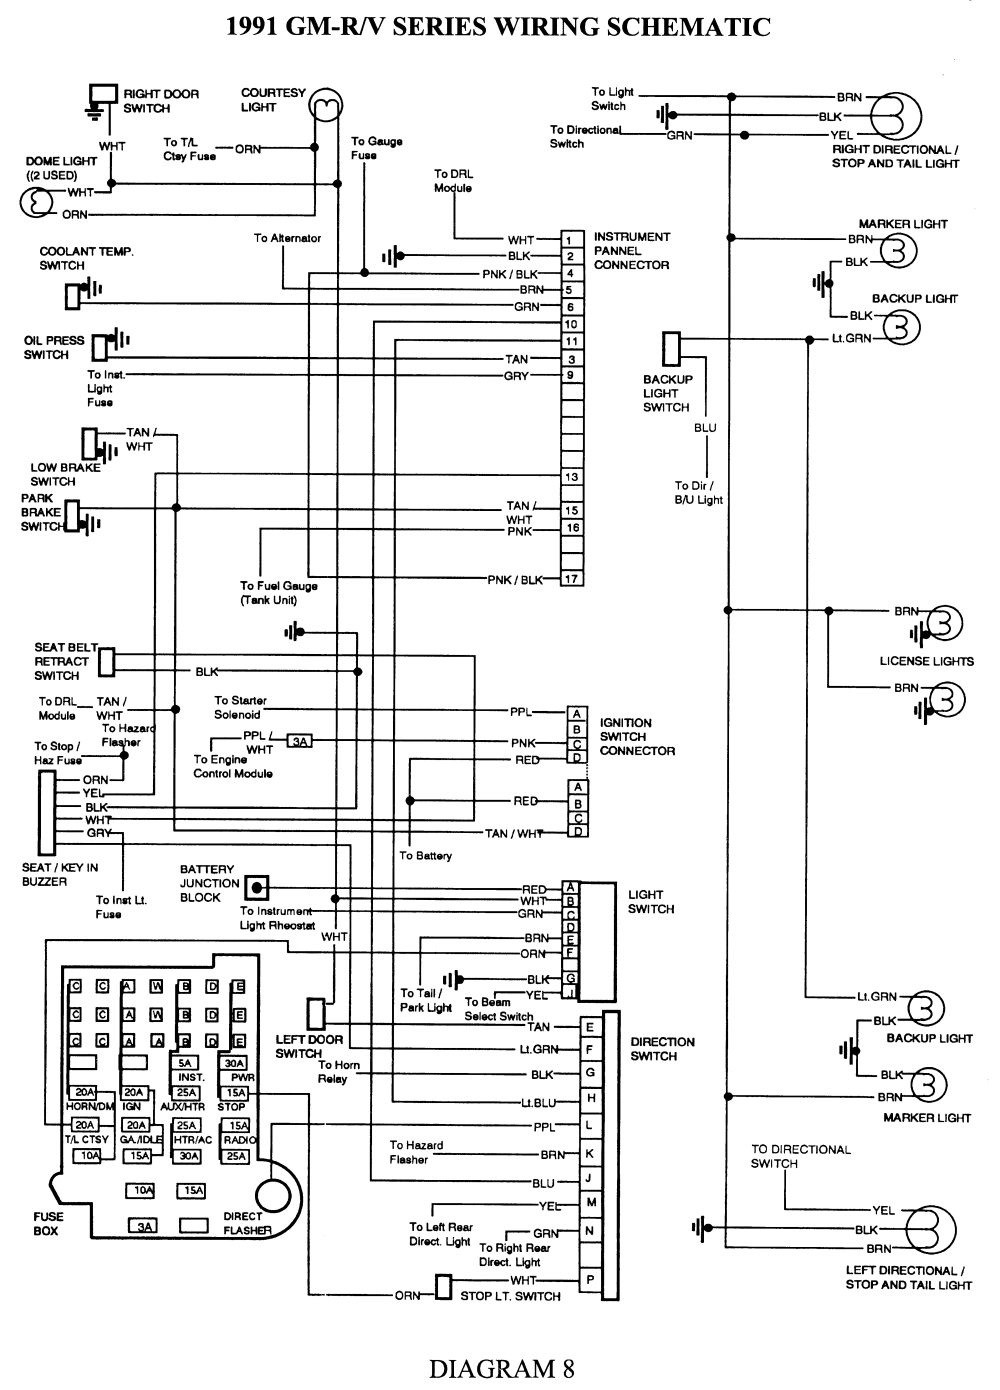 2001 Chevy Blazer Trailer Wiring Diagram